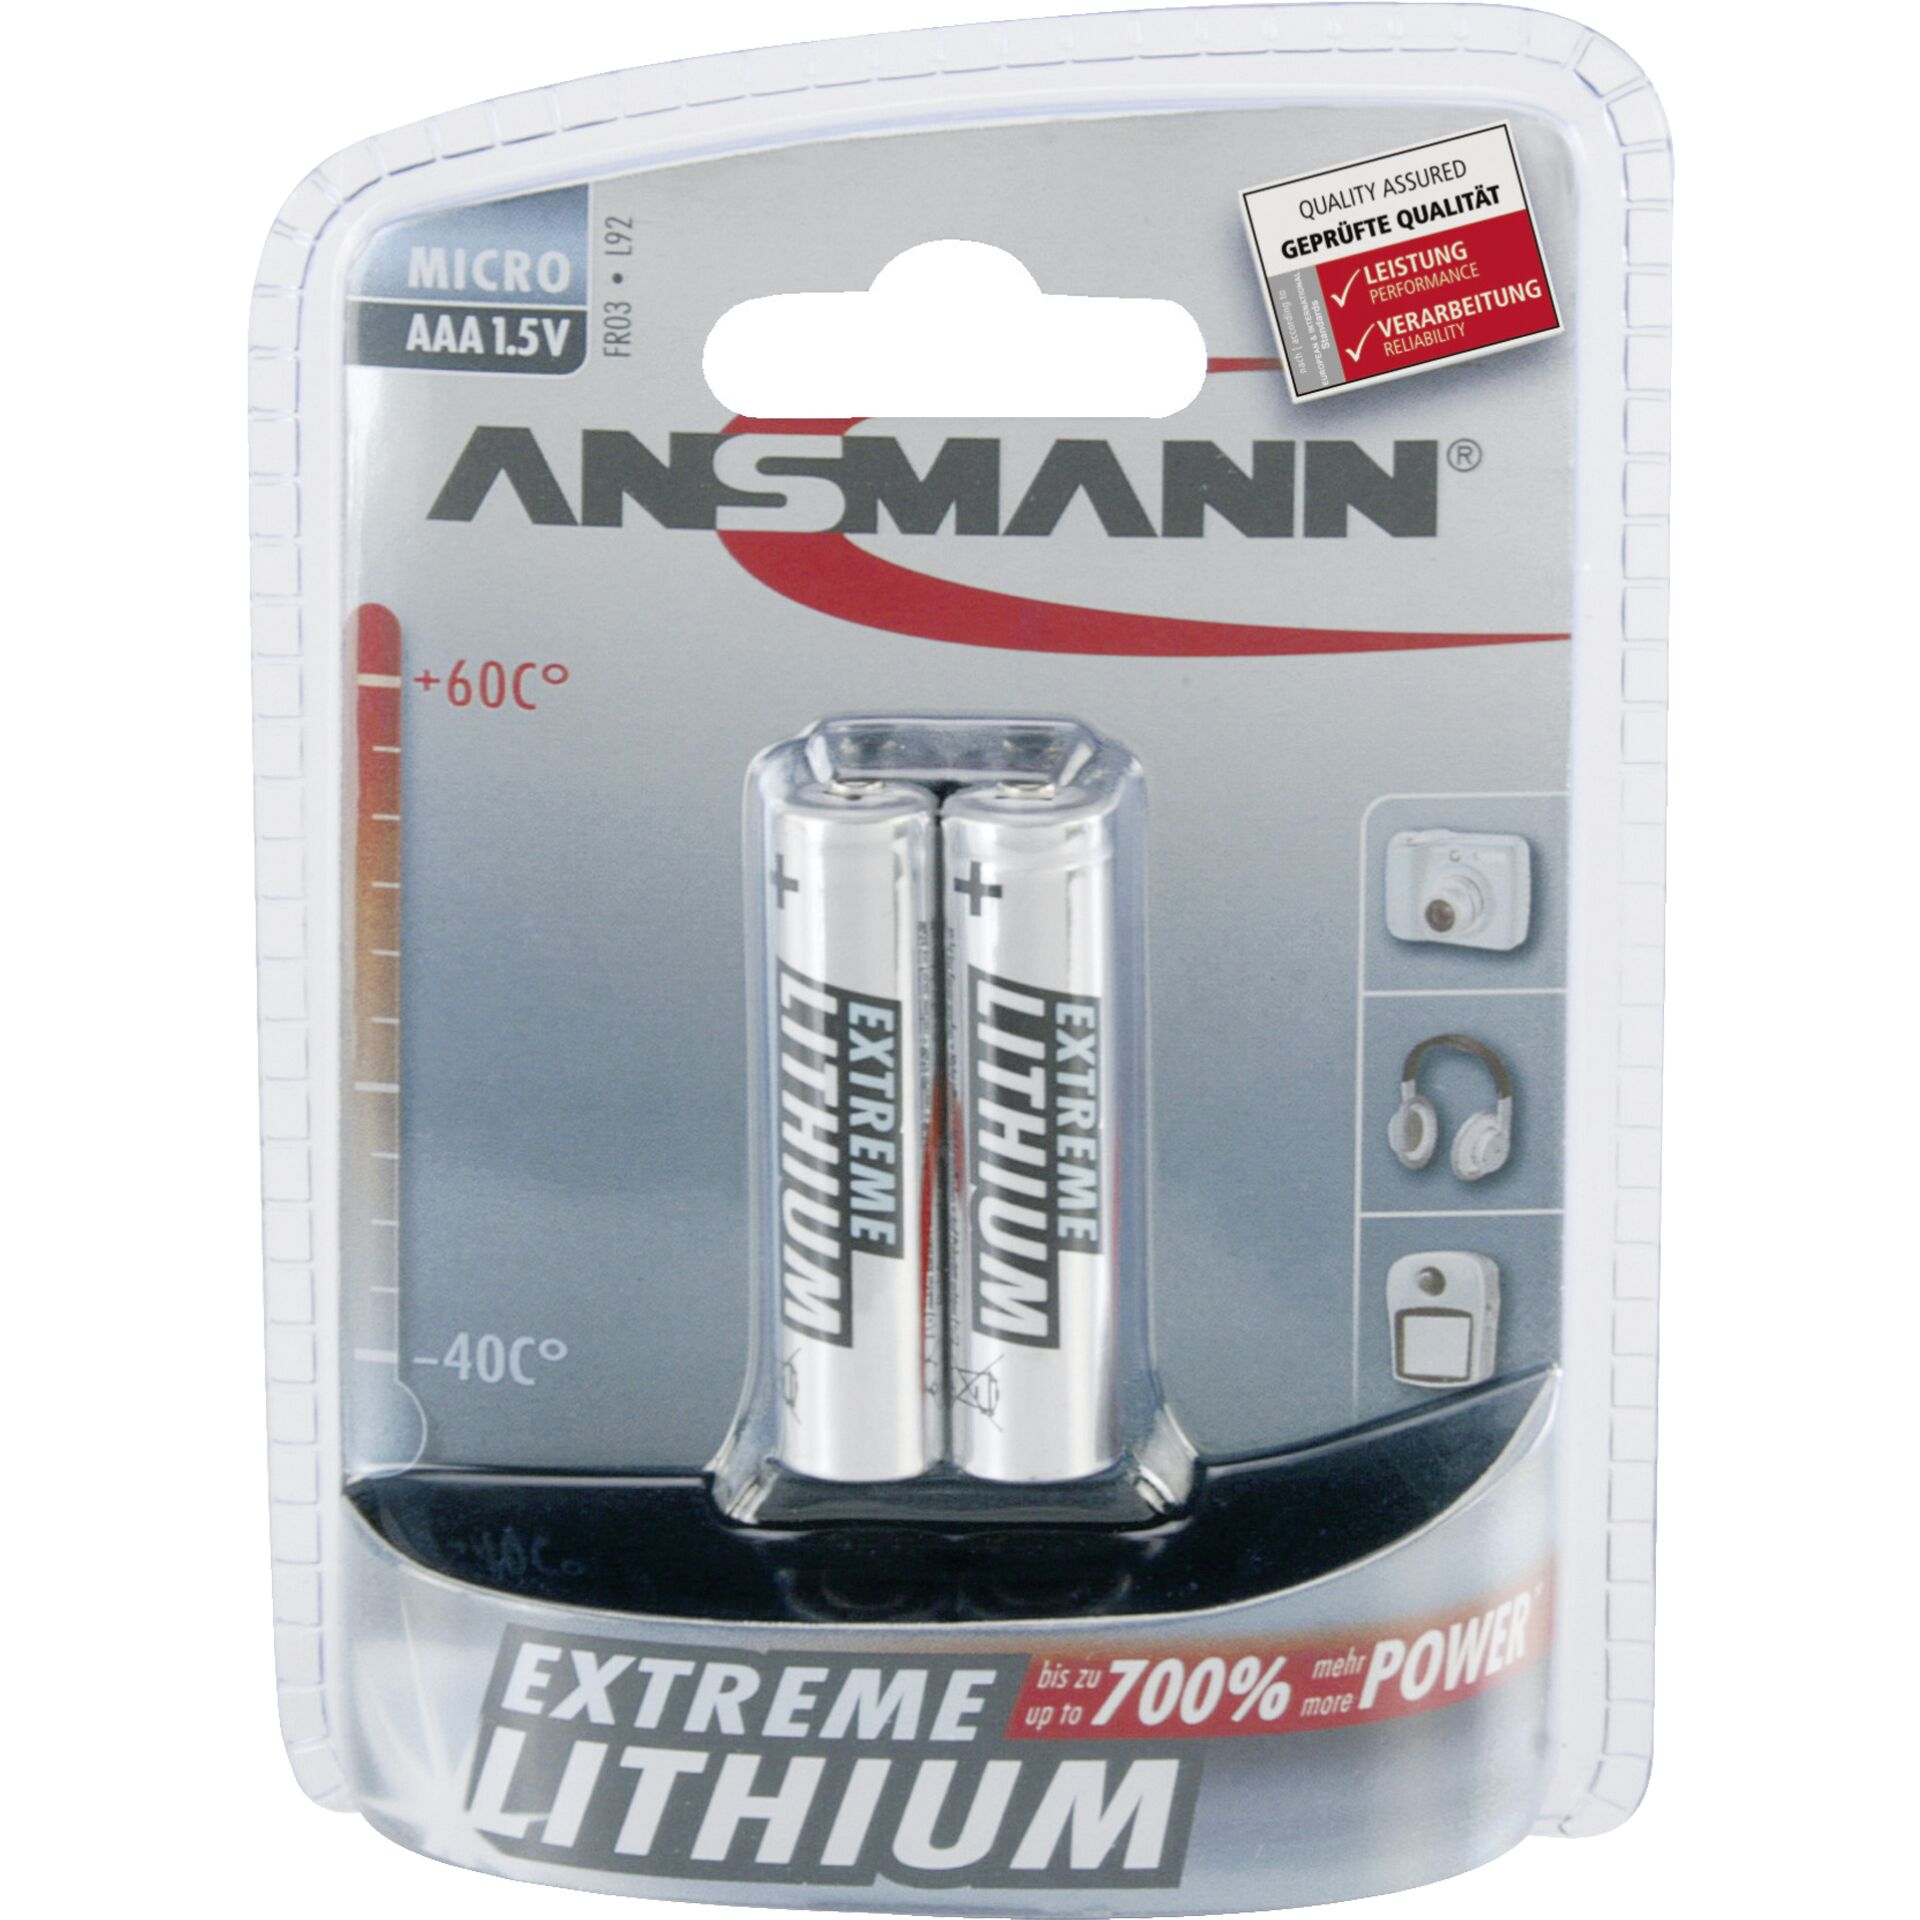 1x2 Ansmann Lithium Micro AAA LR 03 Extreme